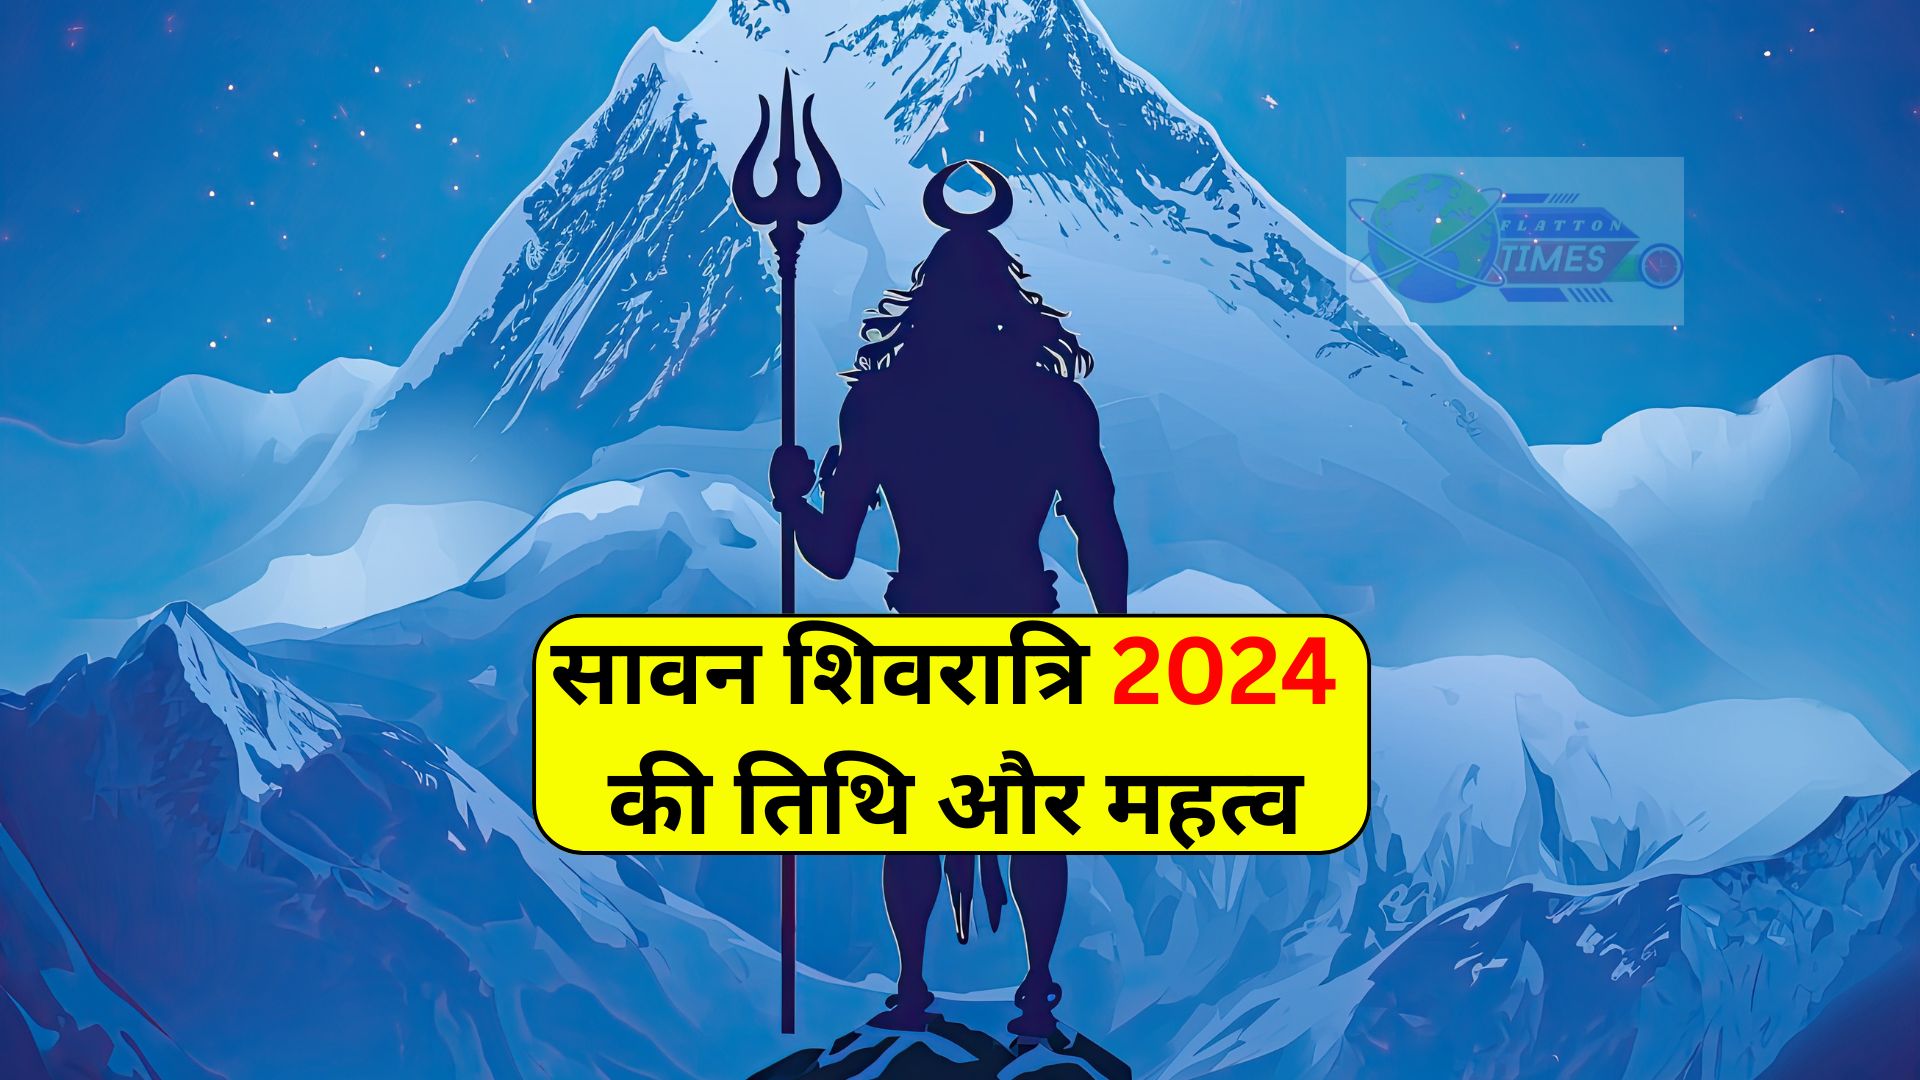 Sawan-Shivratri-2024 BJP Candidate list 2024: लोकसभा चुनावों के लिए बीजेपी उम्मीदवारों की पहली लिस्ट जारी |किसे टिकट दिया गया है और किसे मौका मिला